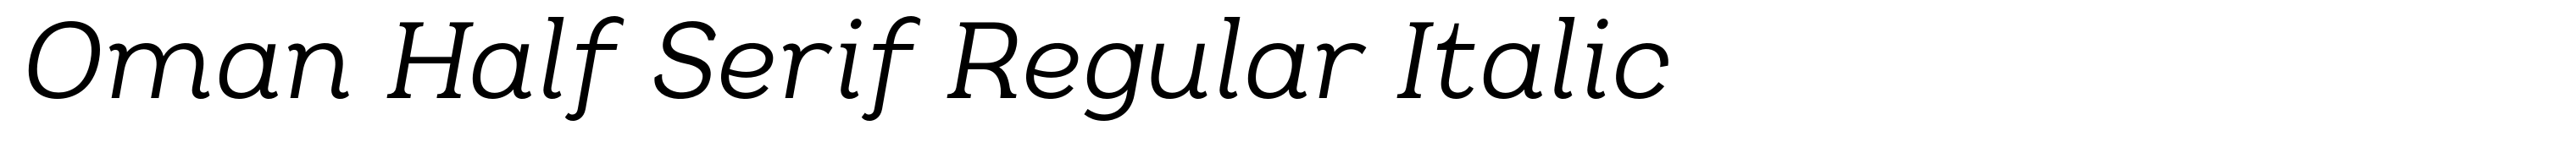 Oman Half Serif Regular Italic